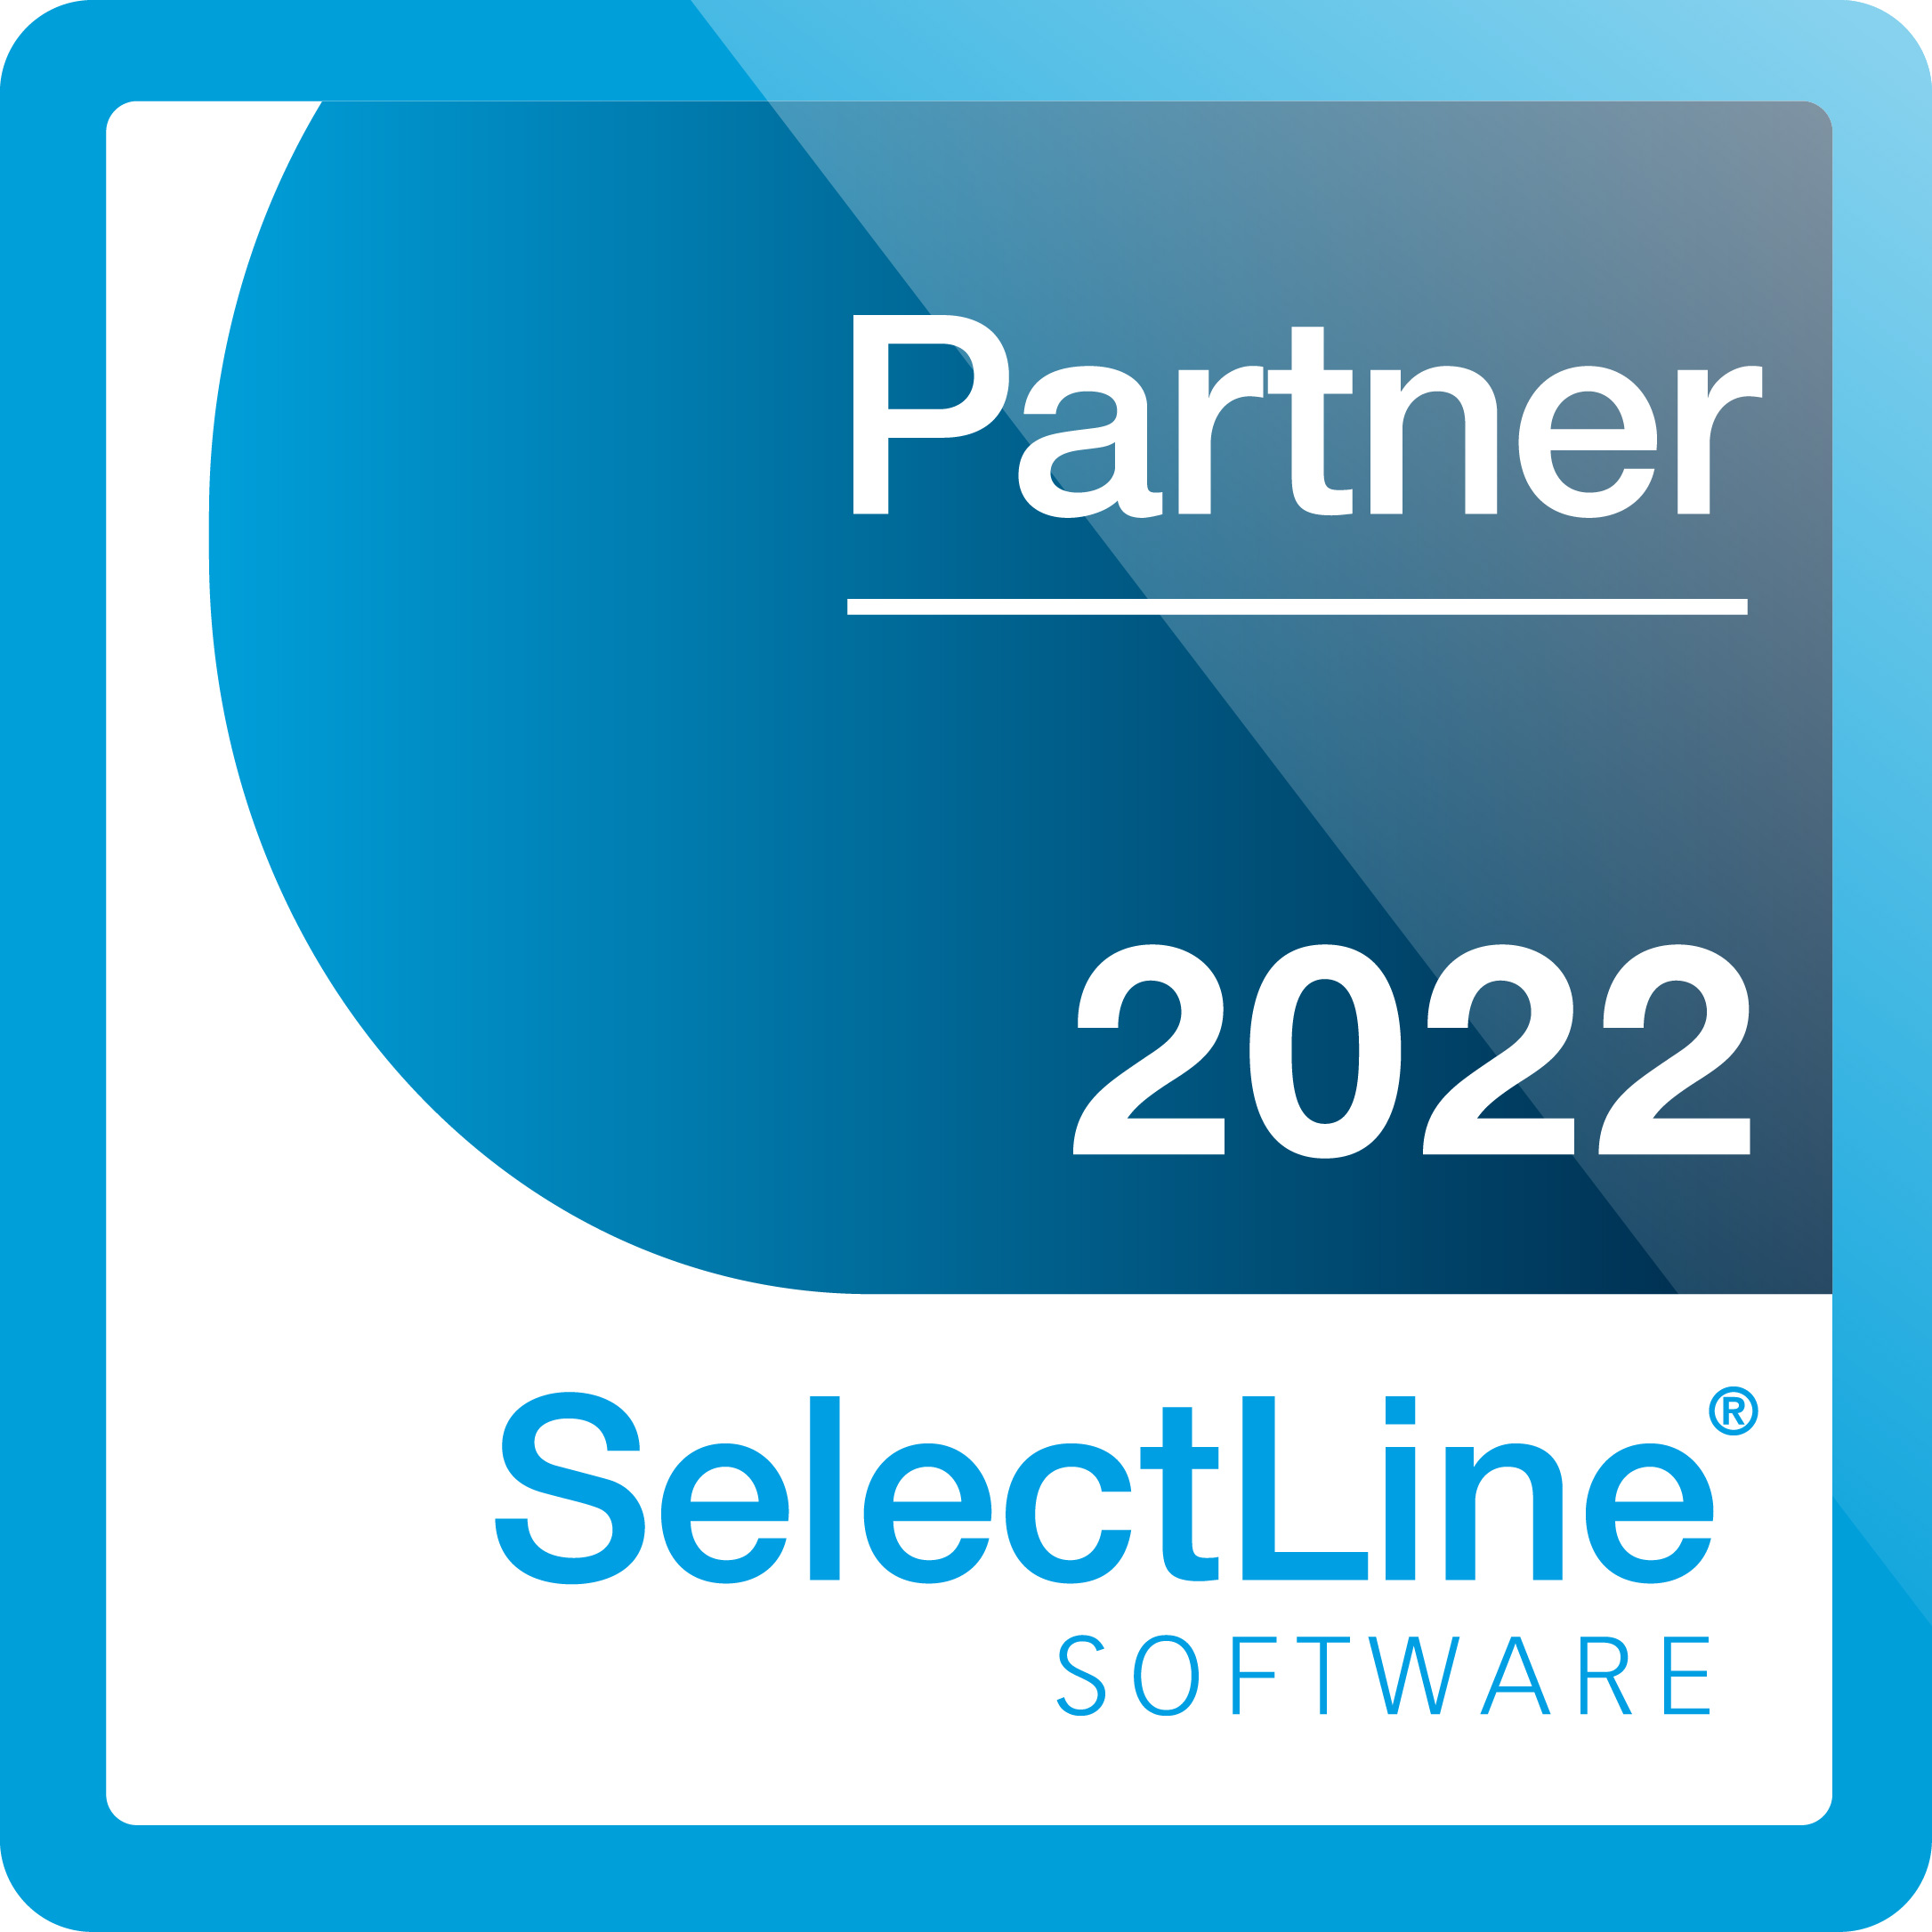 SelectLine Partner 2022